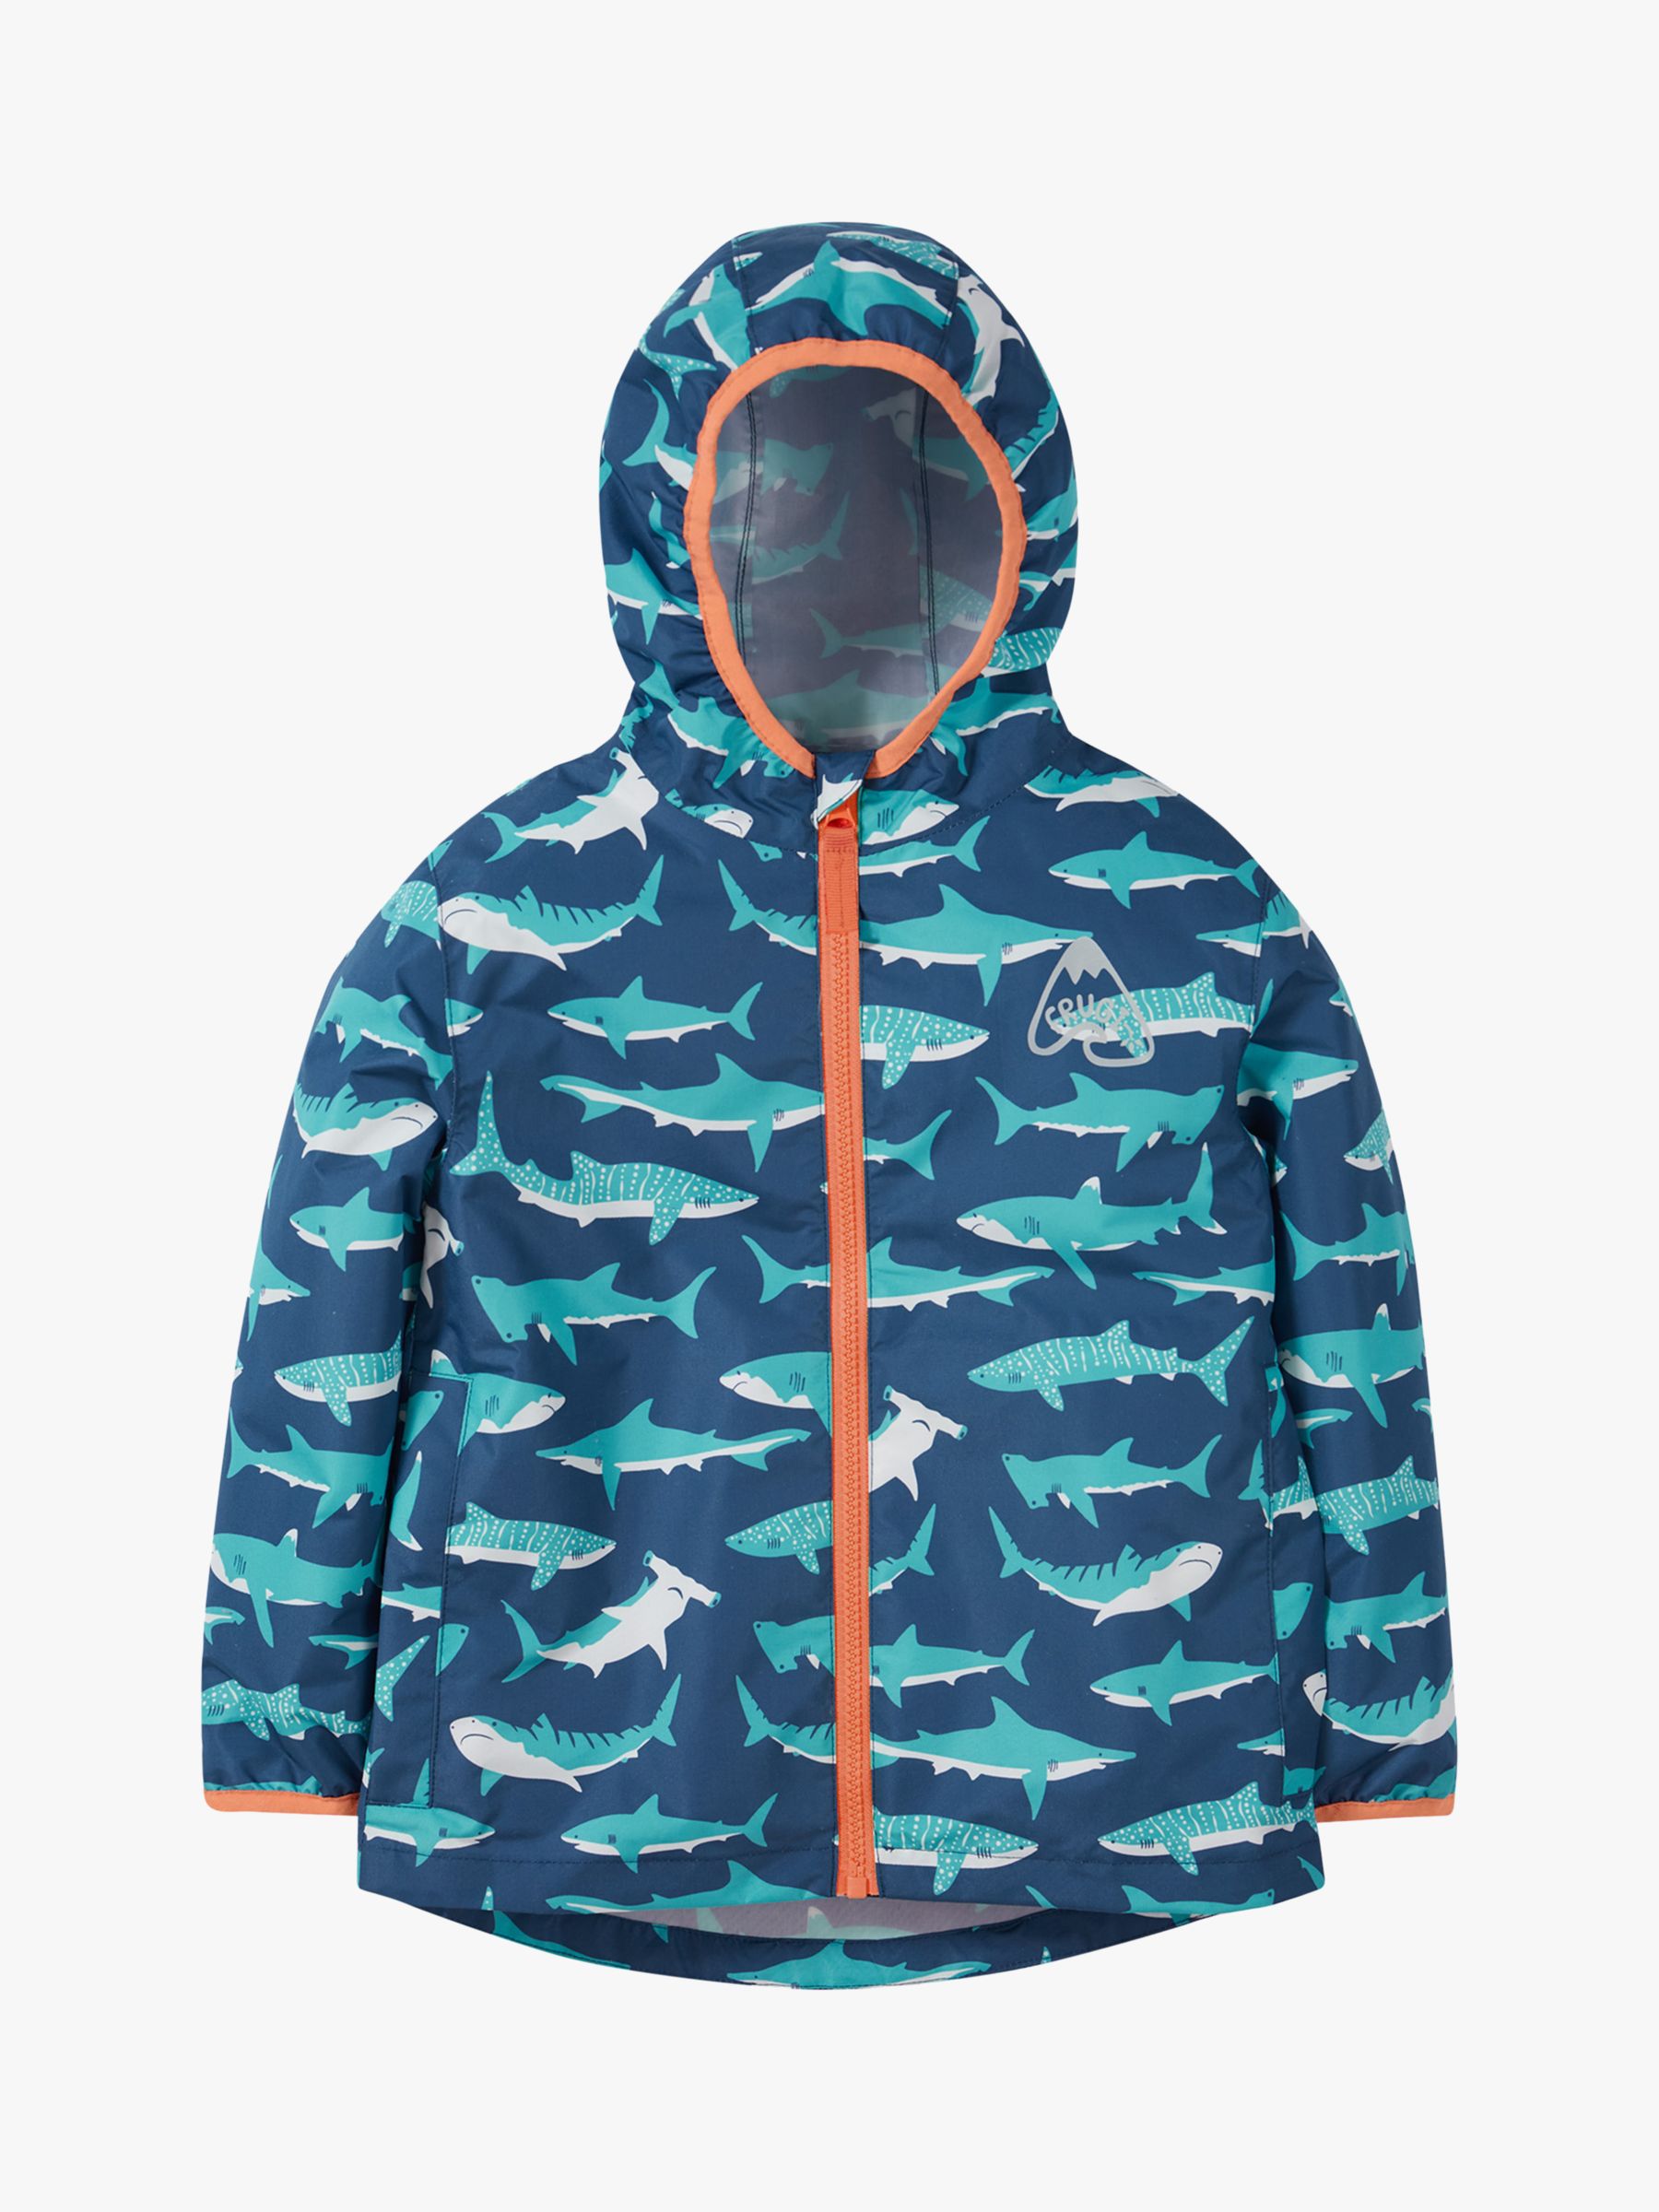 Buy Frugi Kids' Rain Or Shine Waterproof Hooded Jacket, Tropical Sea Shark Online at johnlewis.com